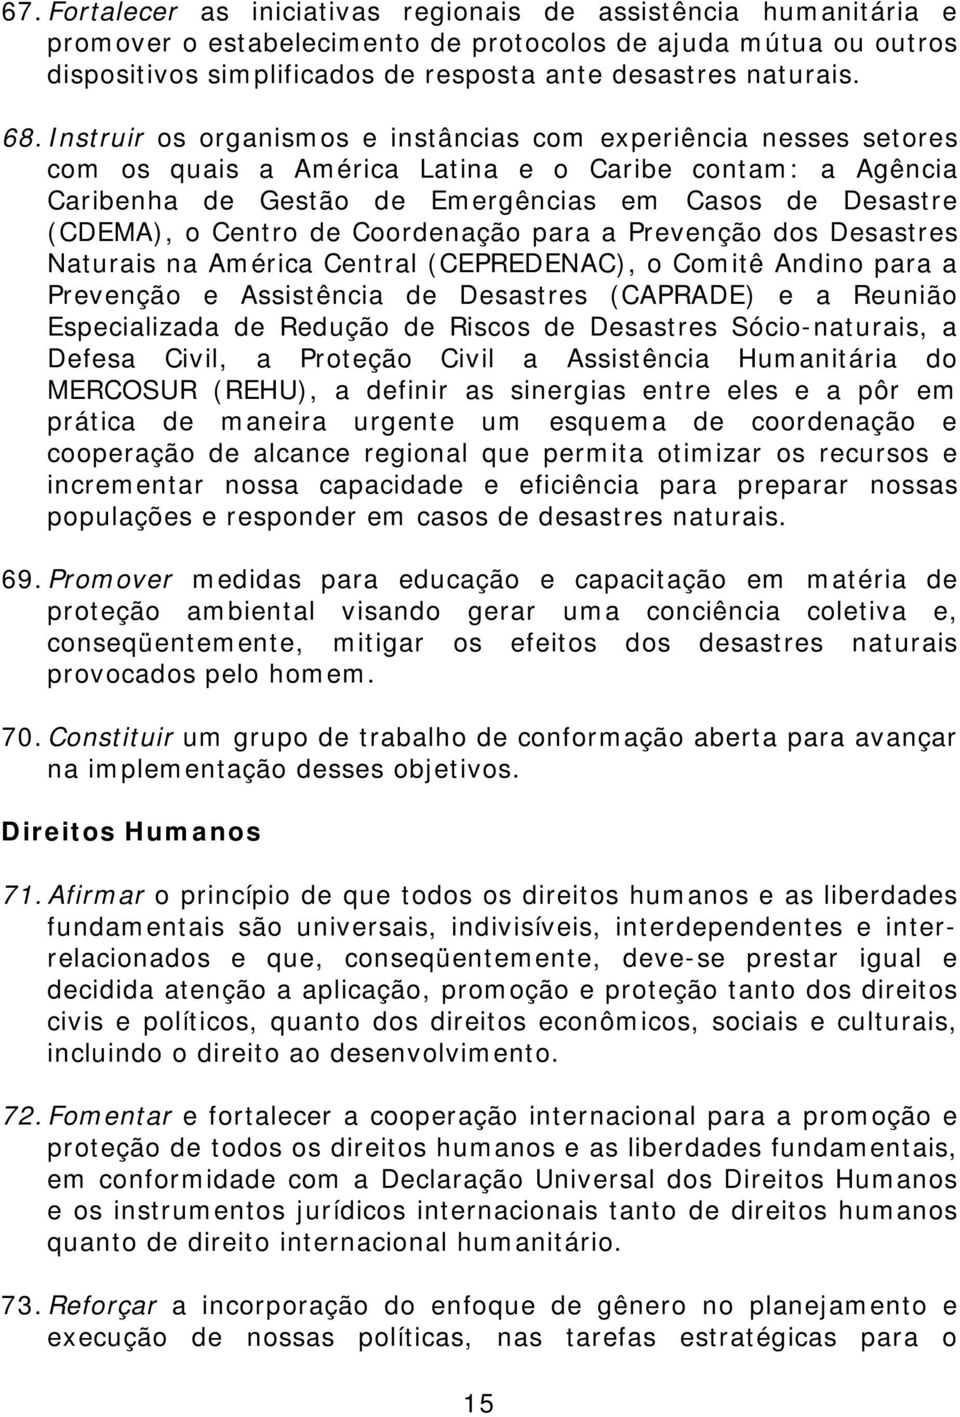 Centro de Coordenação para a Prevenção dos Desastres Naturais na América Central (CEPREDENAC), o Comitê Andino para a Prevenção e Assistência de Desastres (CAPRADE) e a Reunião Especializada de